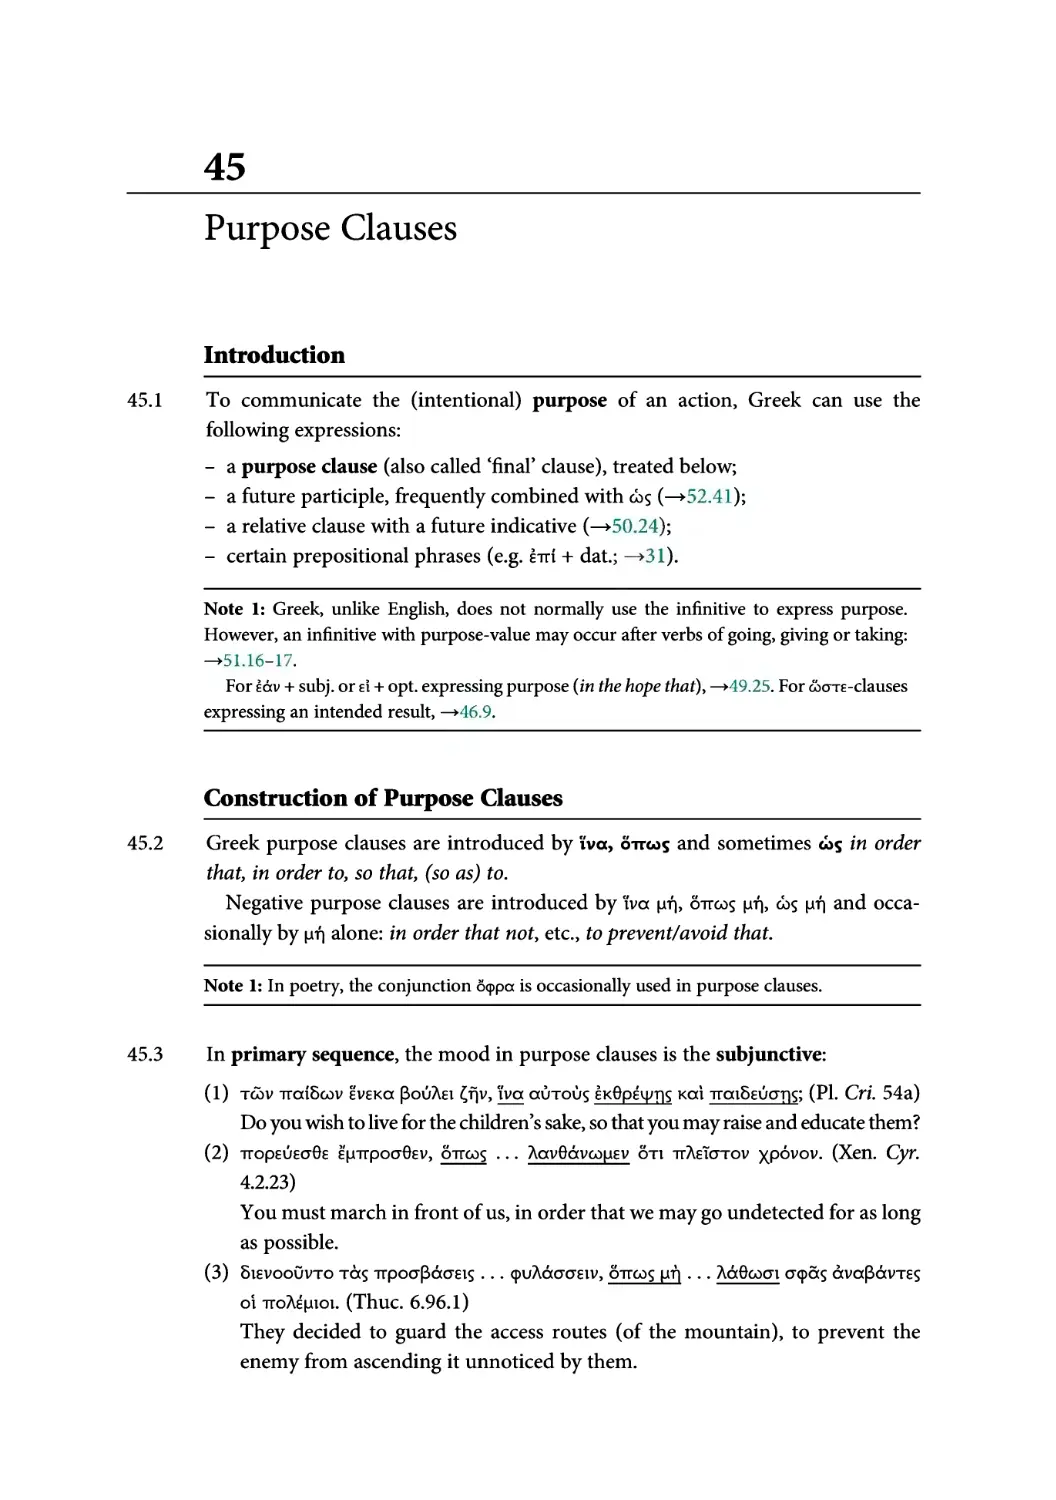 45. Purpose Clauses